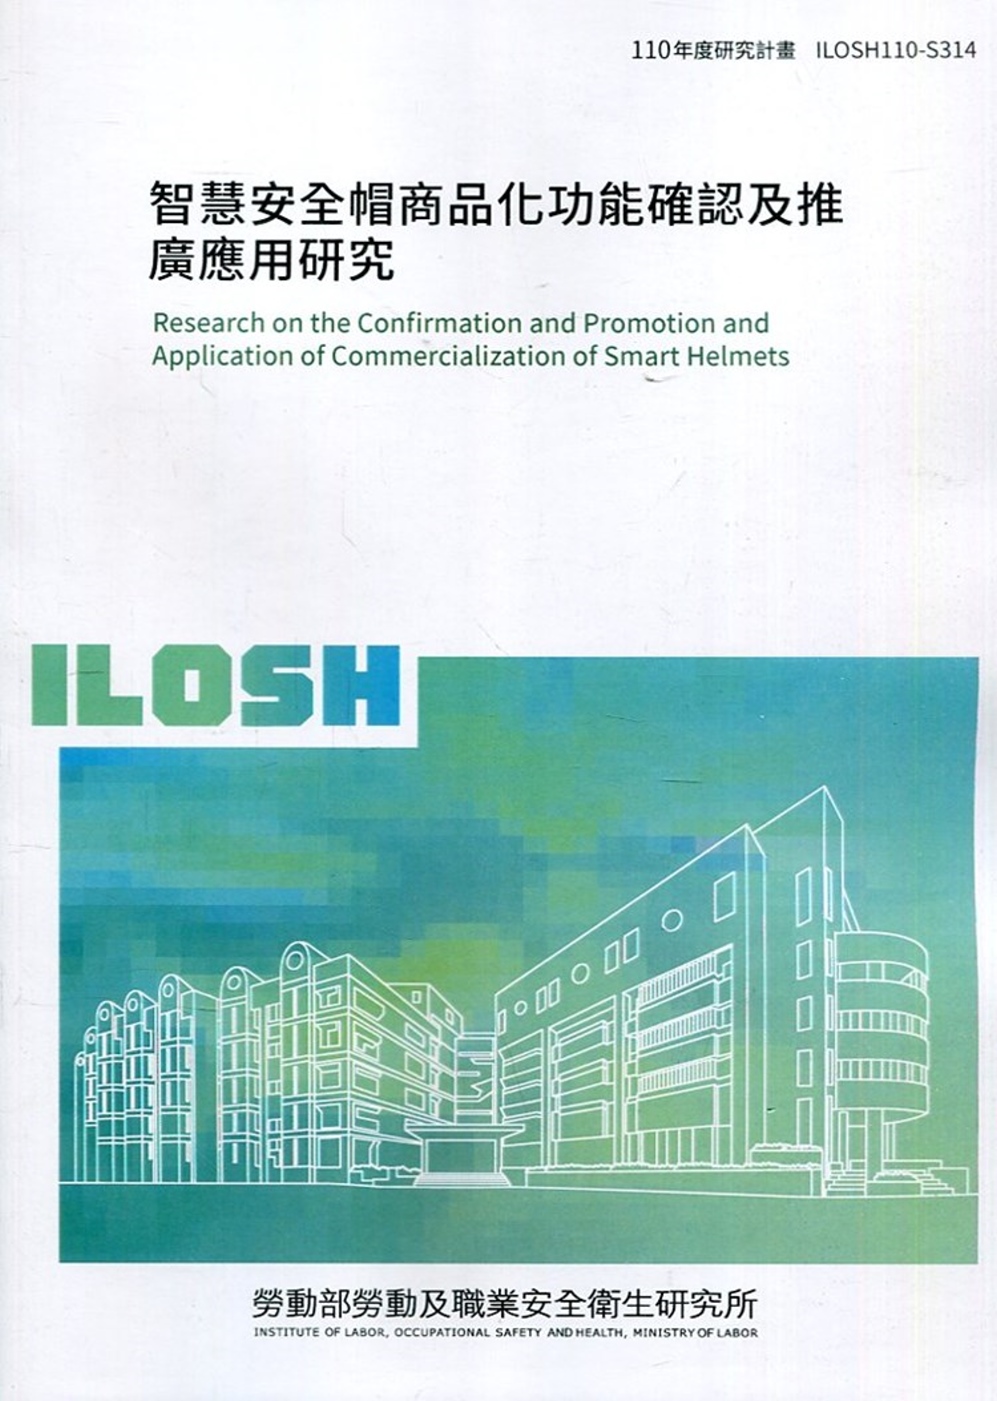 智慧安全帽商品化功能確認及推廣應用研究 ILOSH110-S314